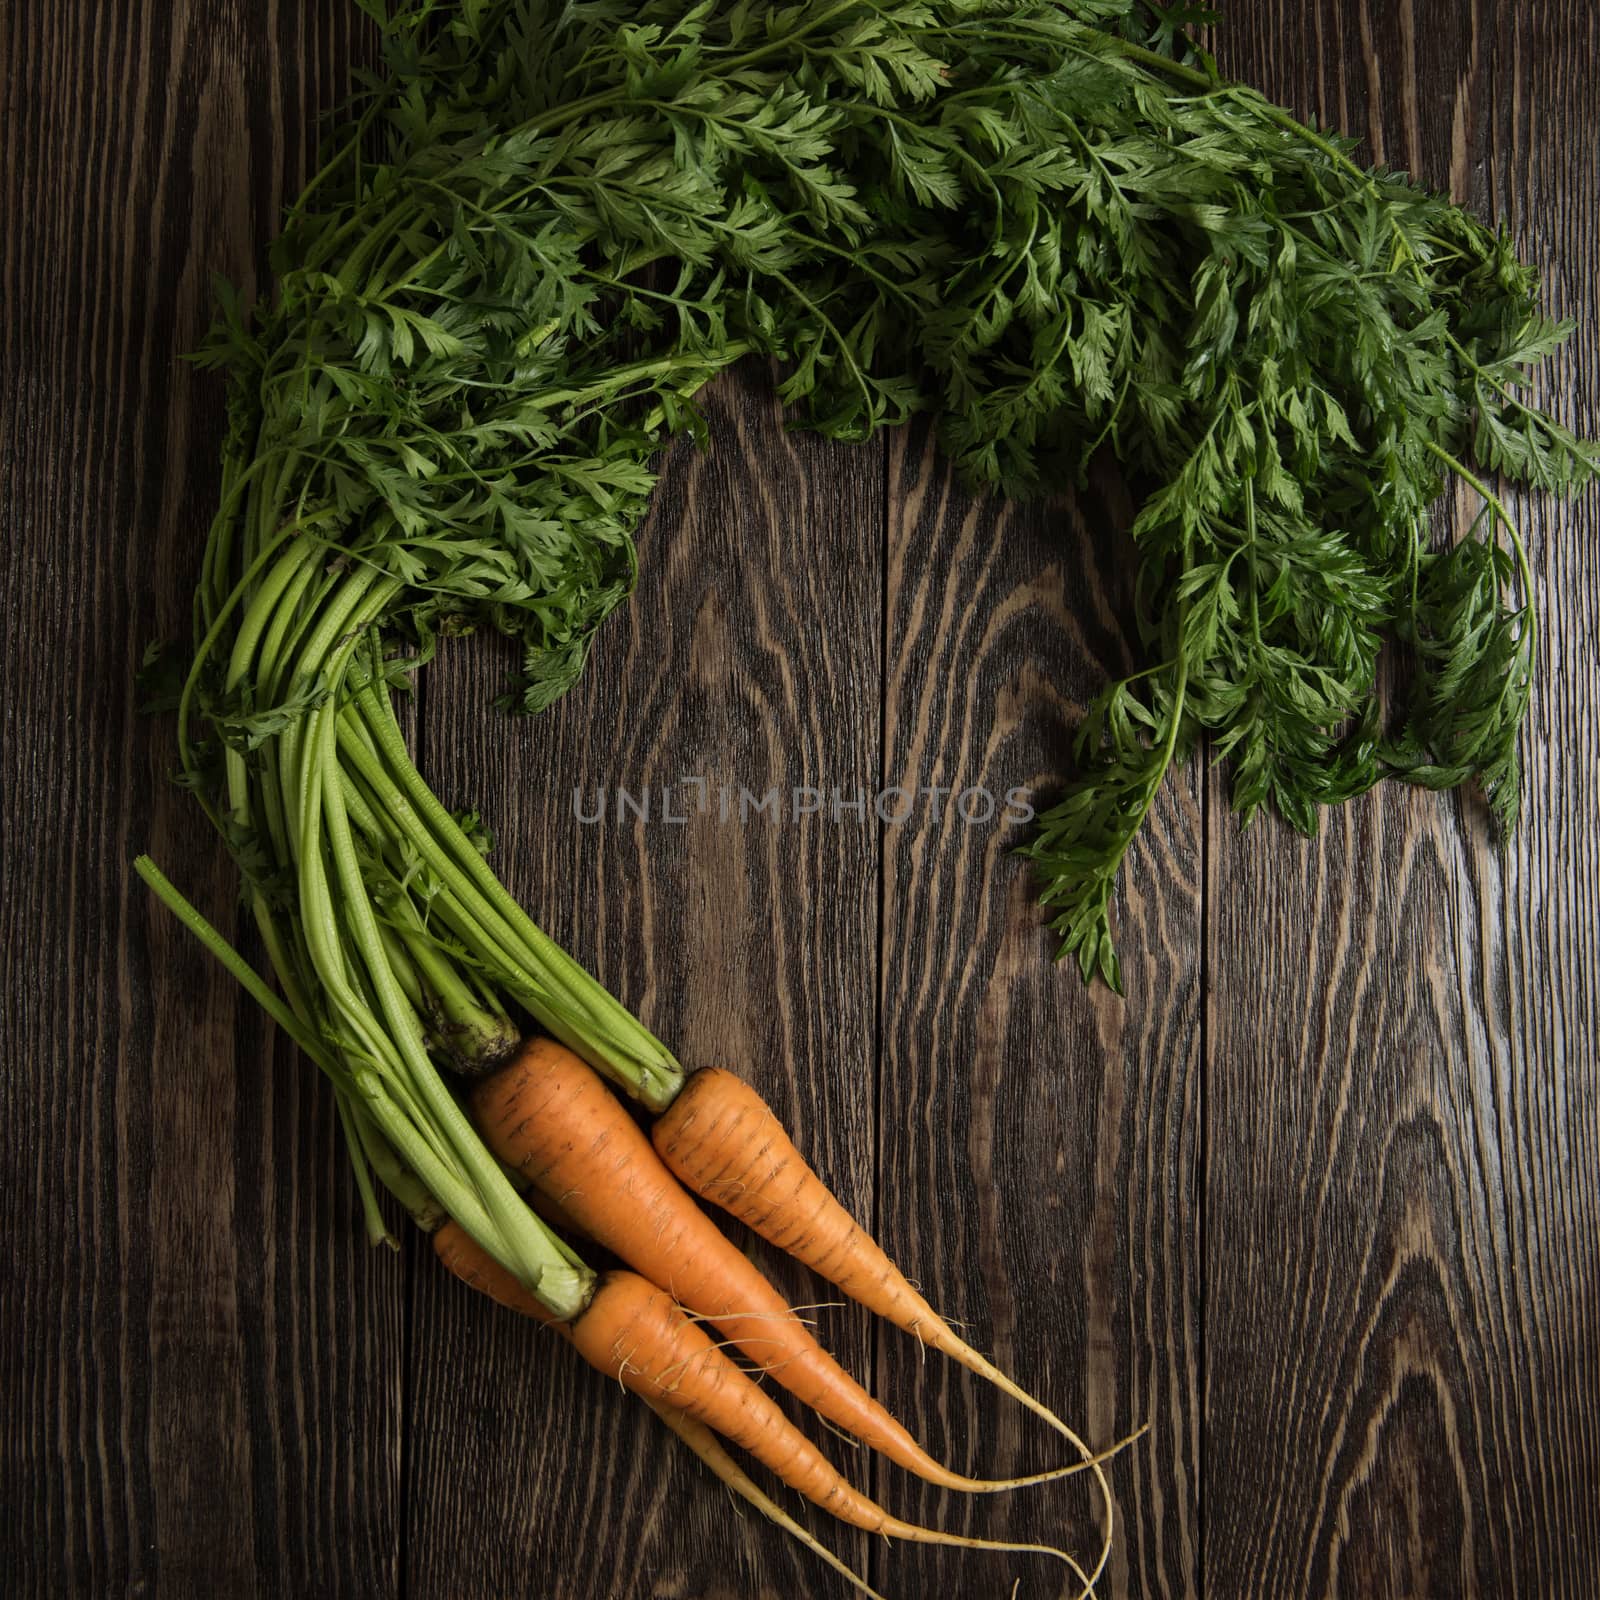 Freshly grown carrots by rusak